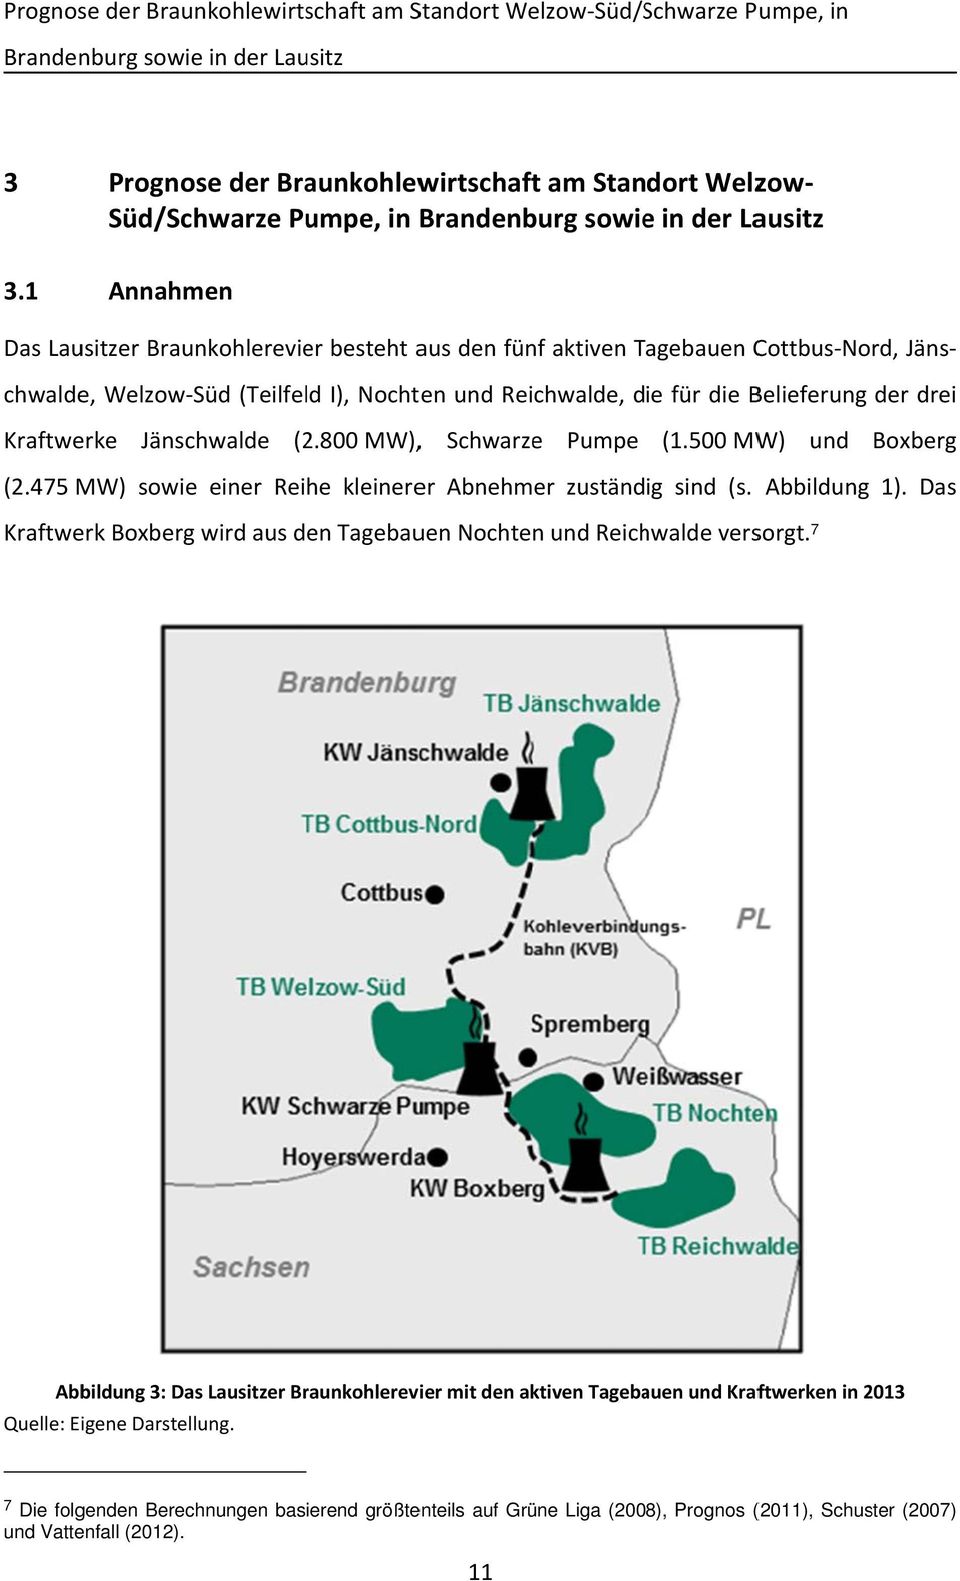 500 MW) und Boxberg (Teilfeld I), Nochten und Reichwalde, die für die Belieferung Kraftwerke (2.475 MW) sowie einer Reihe kleinerer Abnehmer zuständig sind (s. Abbildung 1).